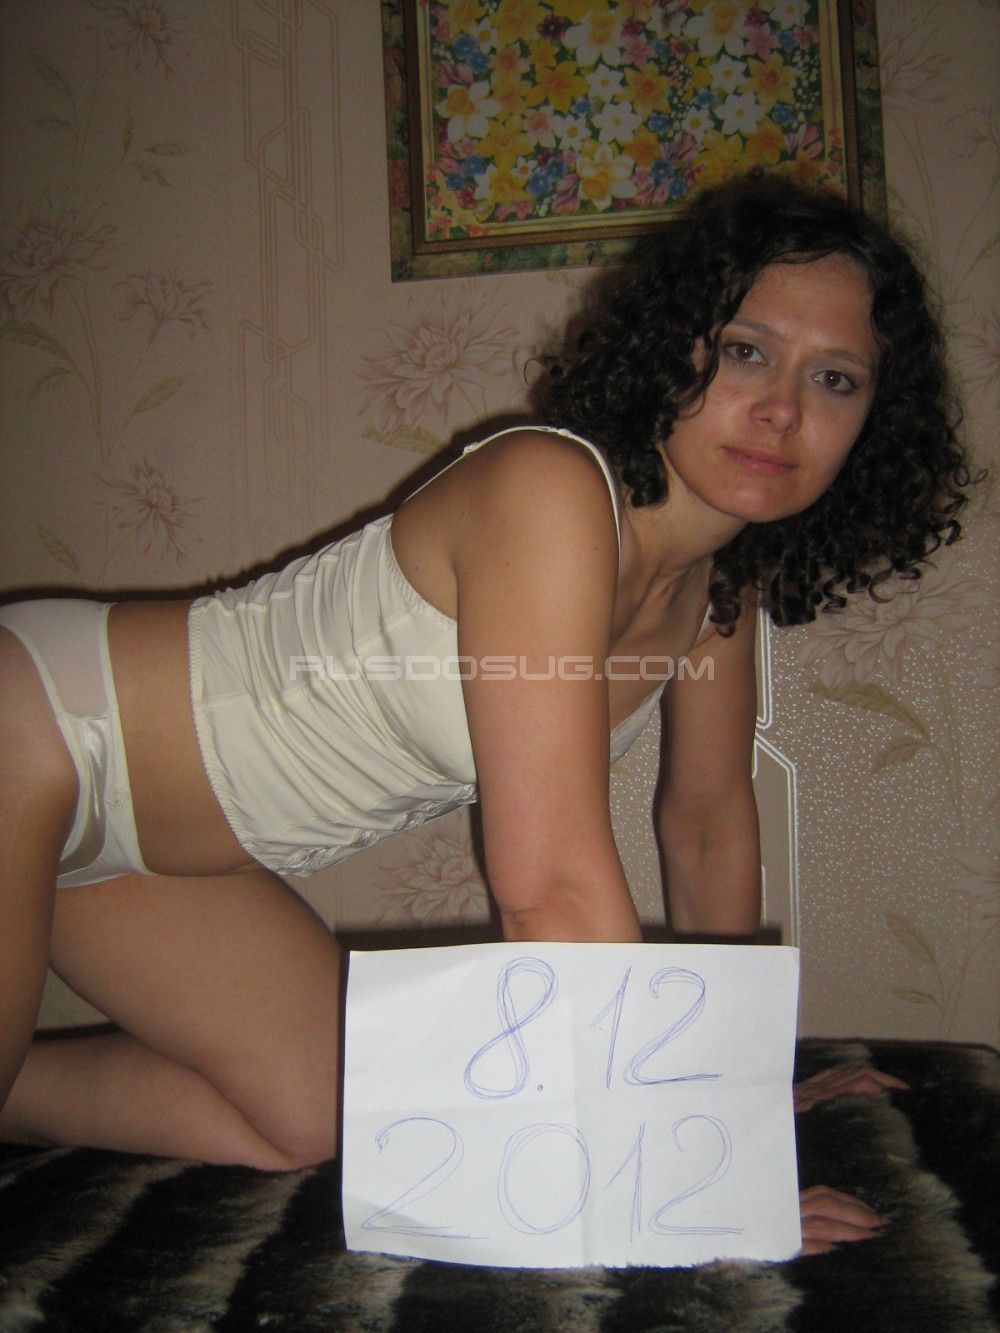 Проститутка Варя с реальными фото в возрасте 29 лет